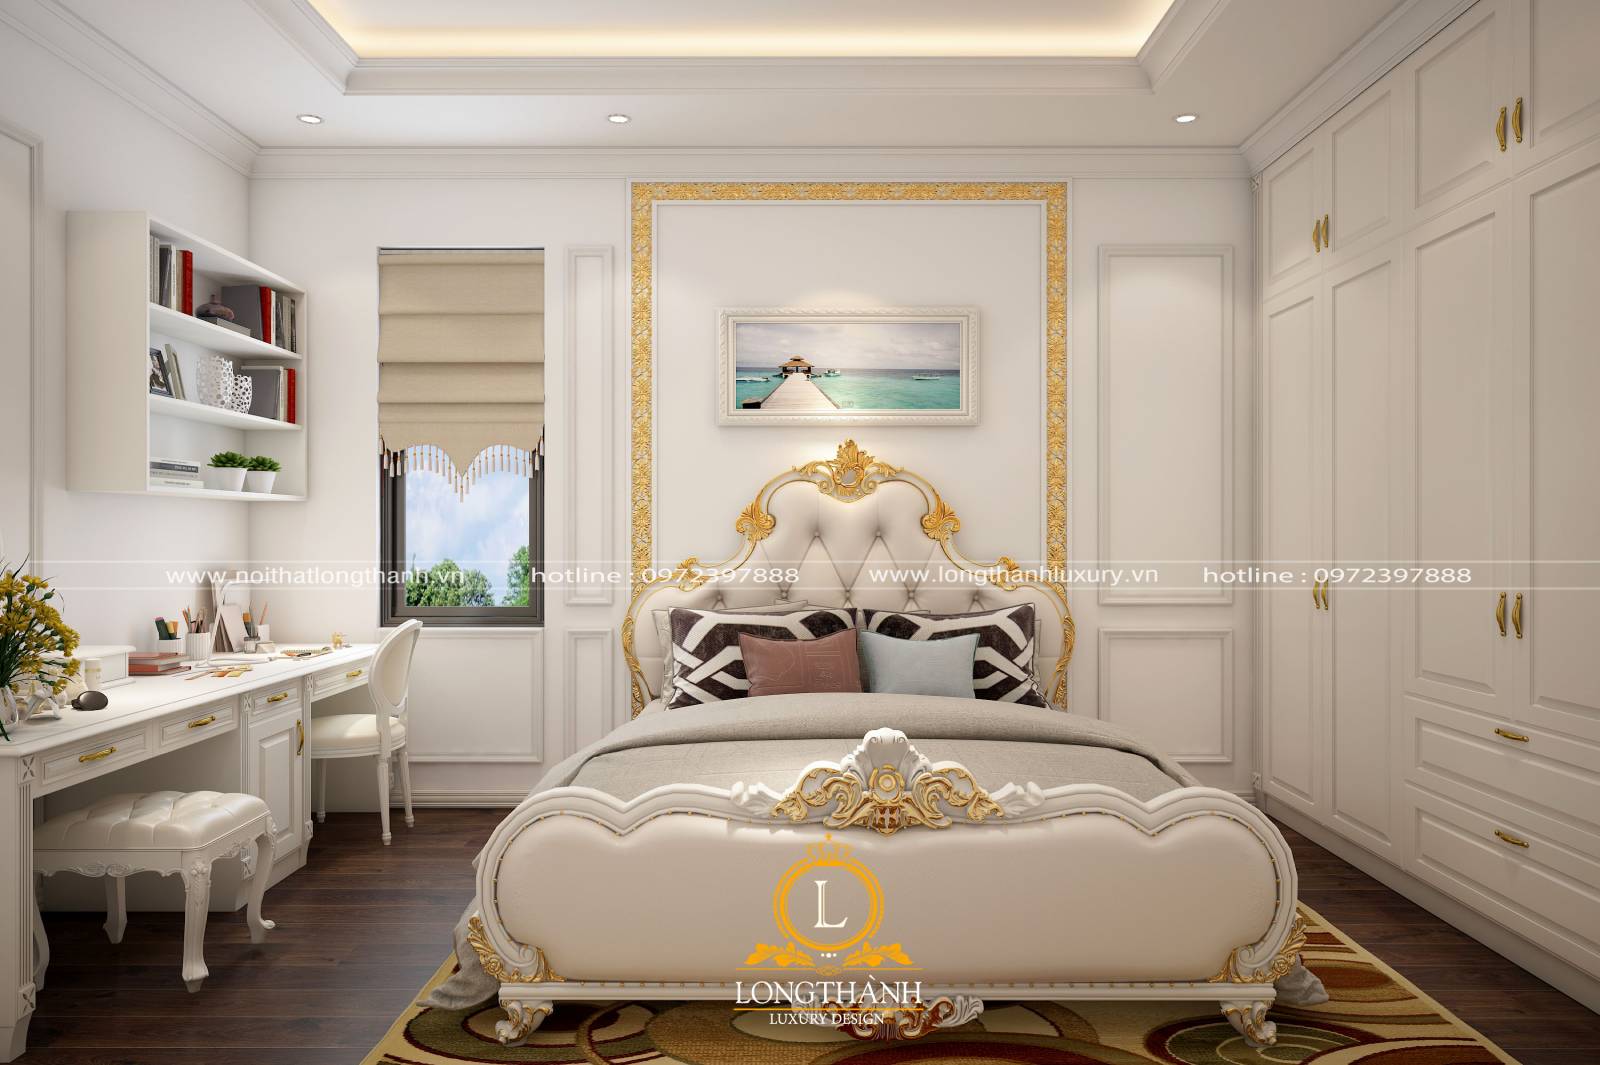 Thiết kế tranh treo tường cho không gian phòng ngủ phong cách hiện đại